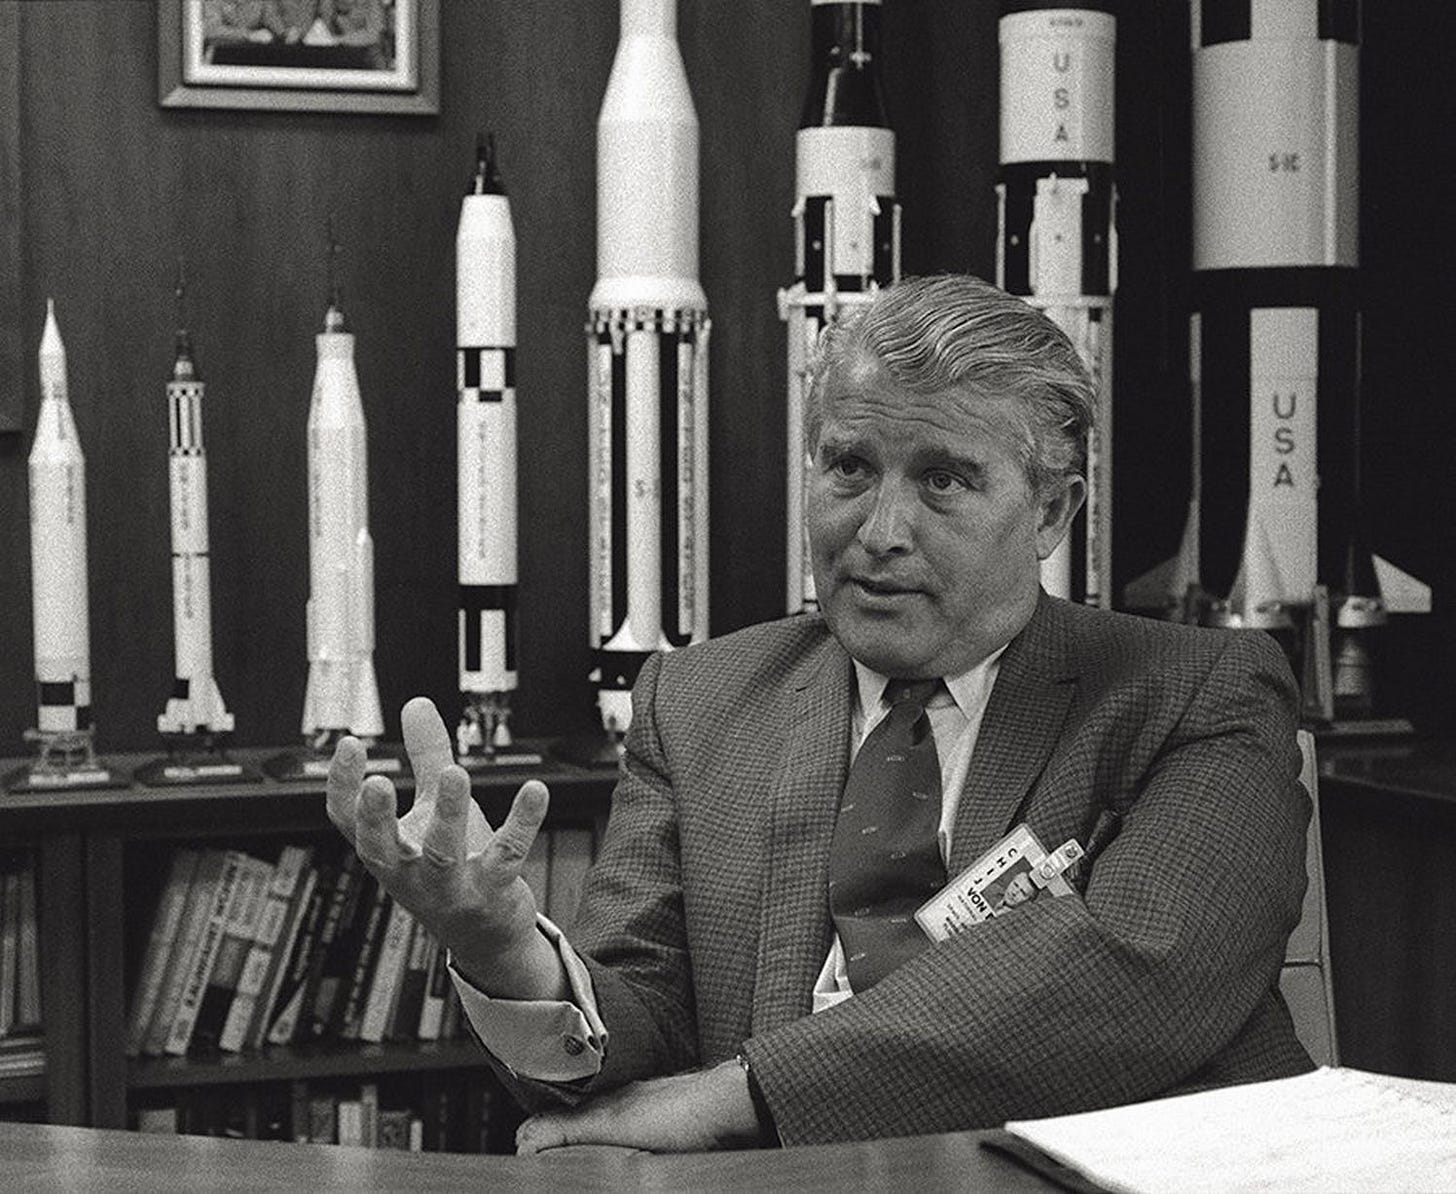 Former Nazi rocket scientist Wenher von Braun, in his role at NASA in 1950